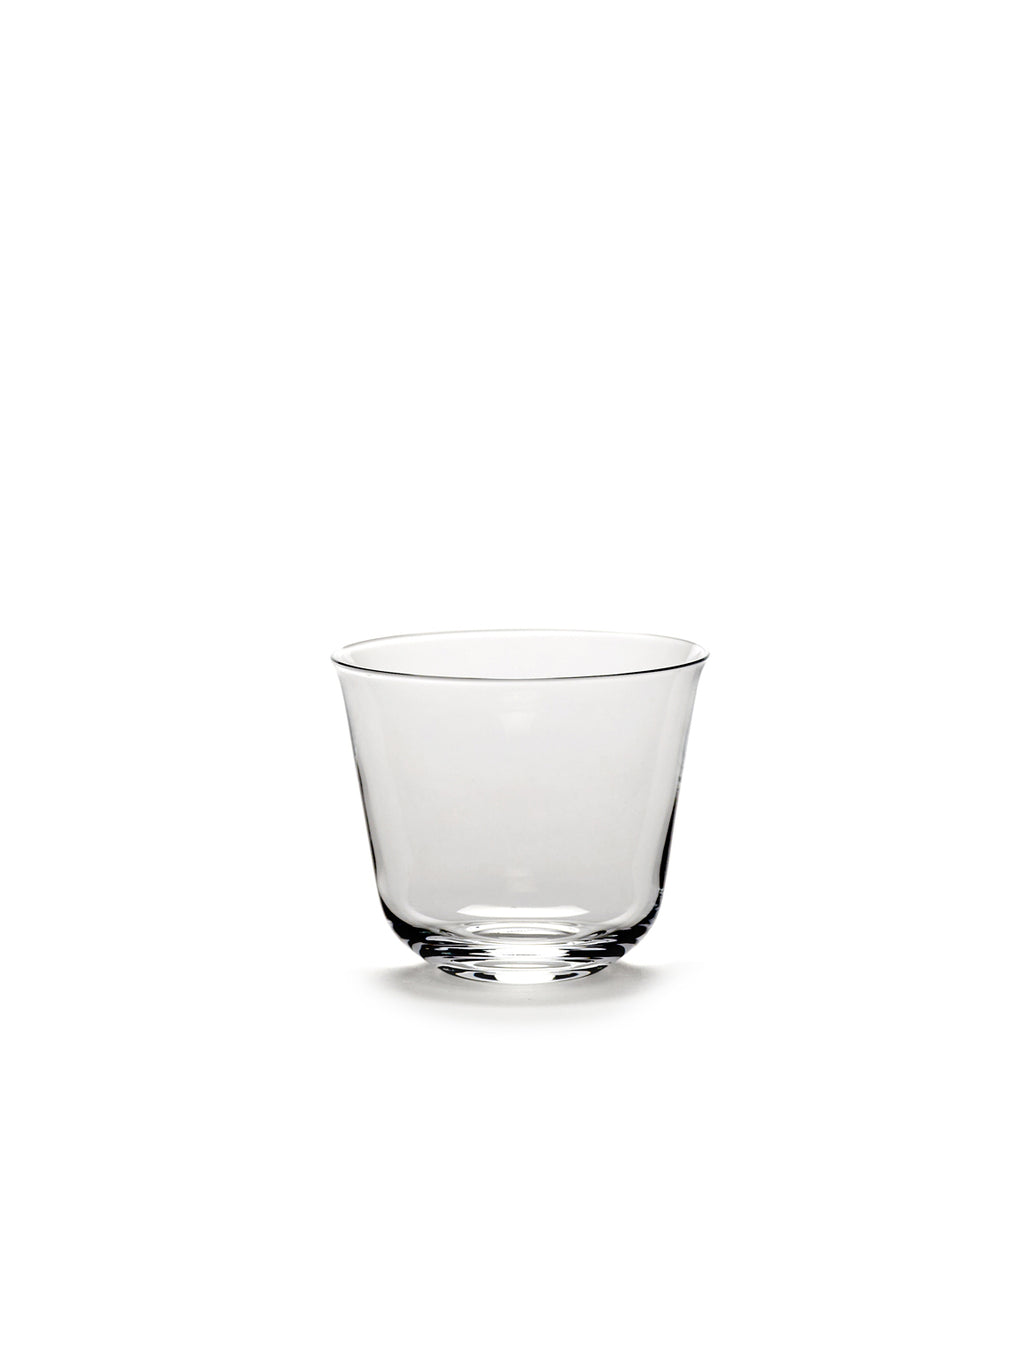 SERAX X ANN DEMEULEMEESTER Glass